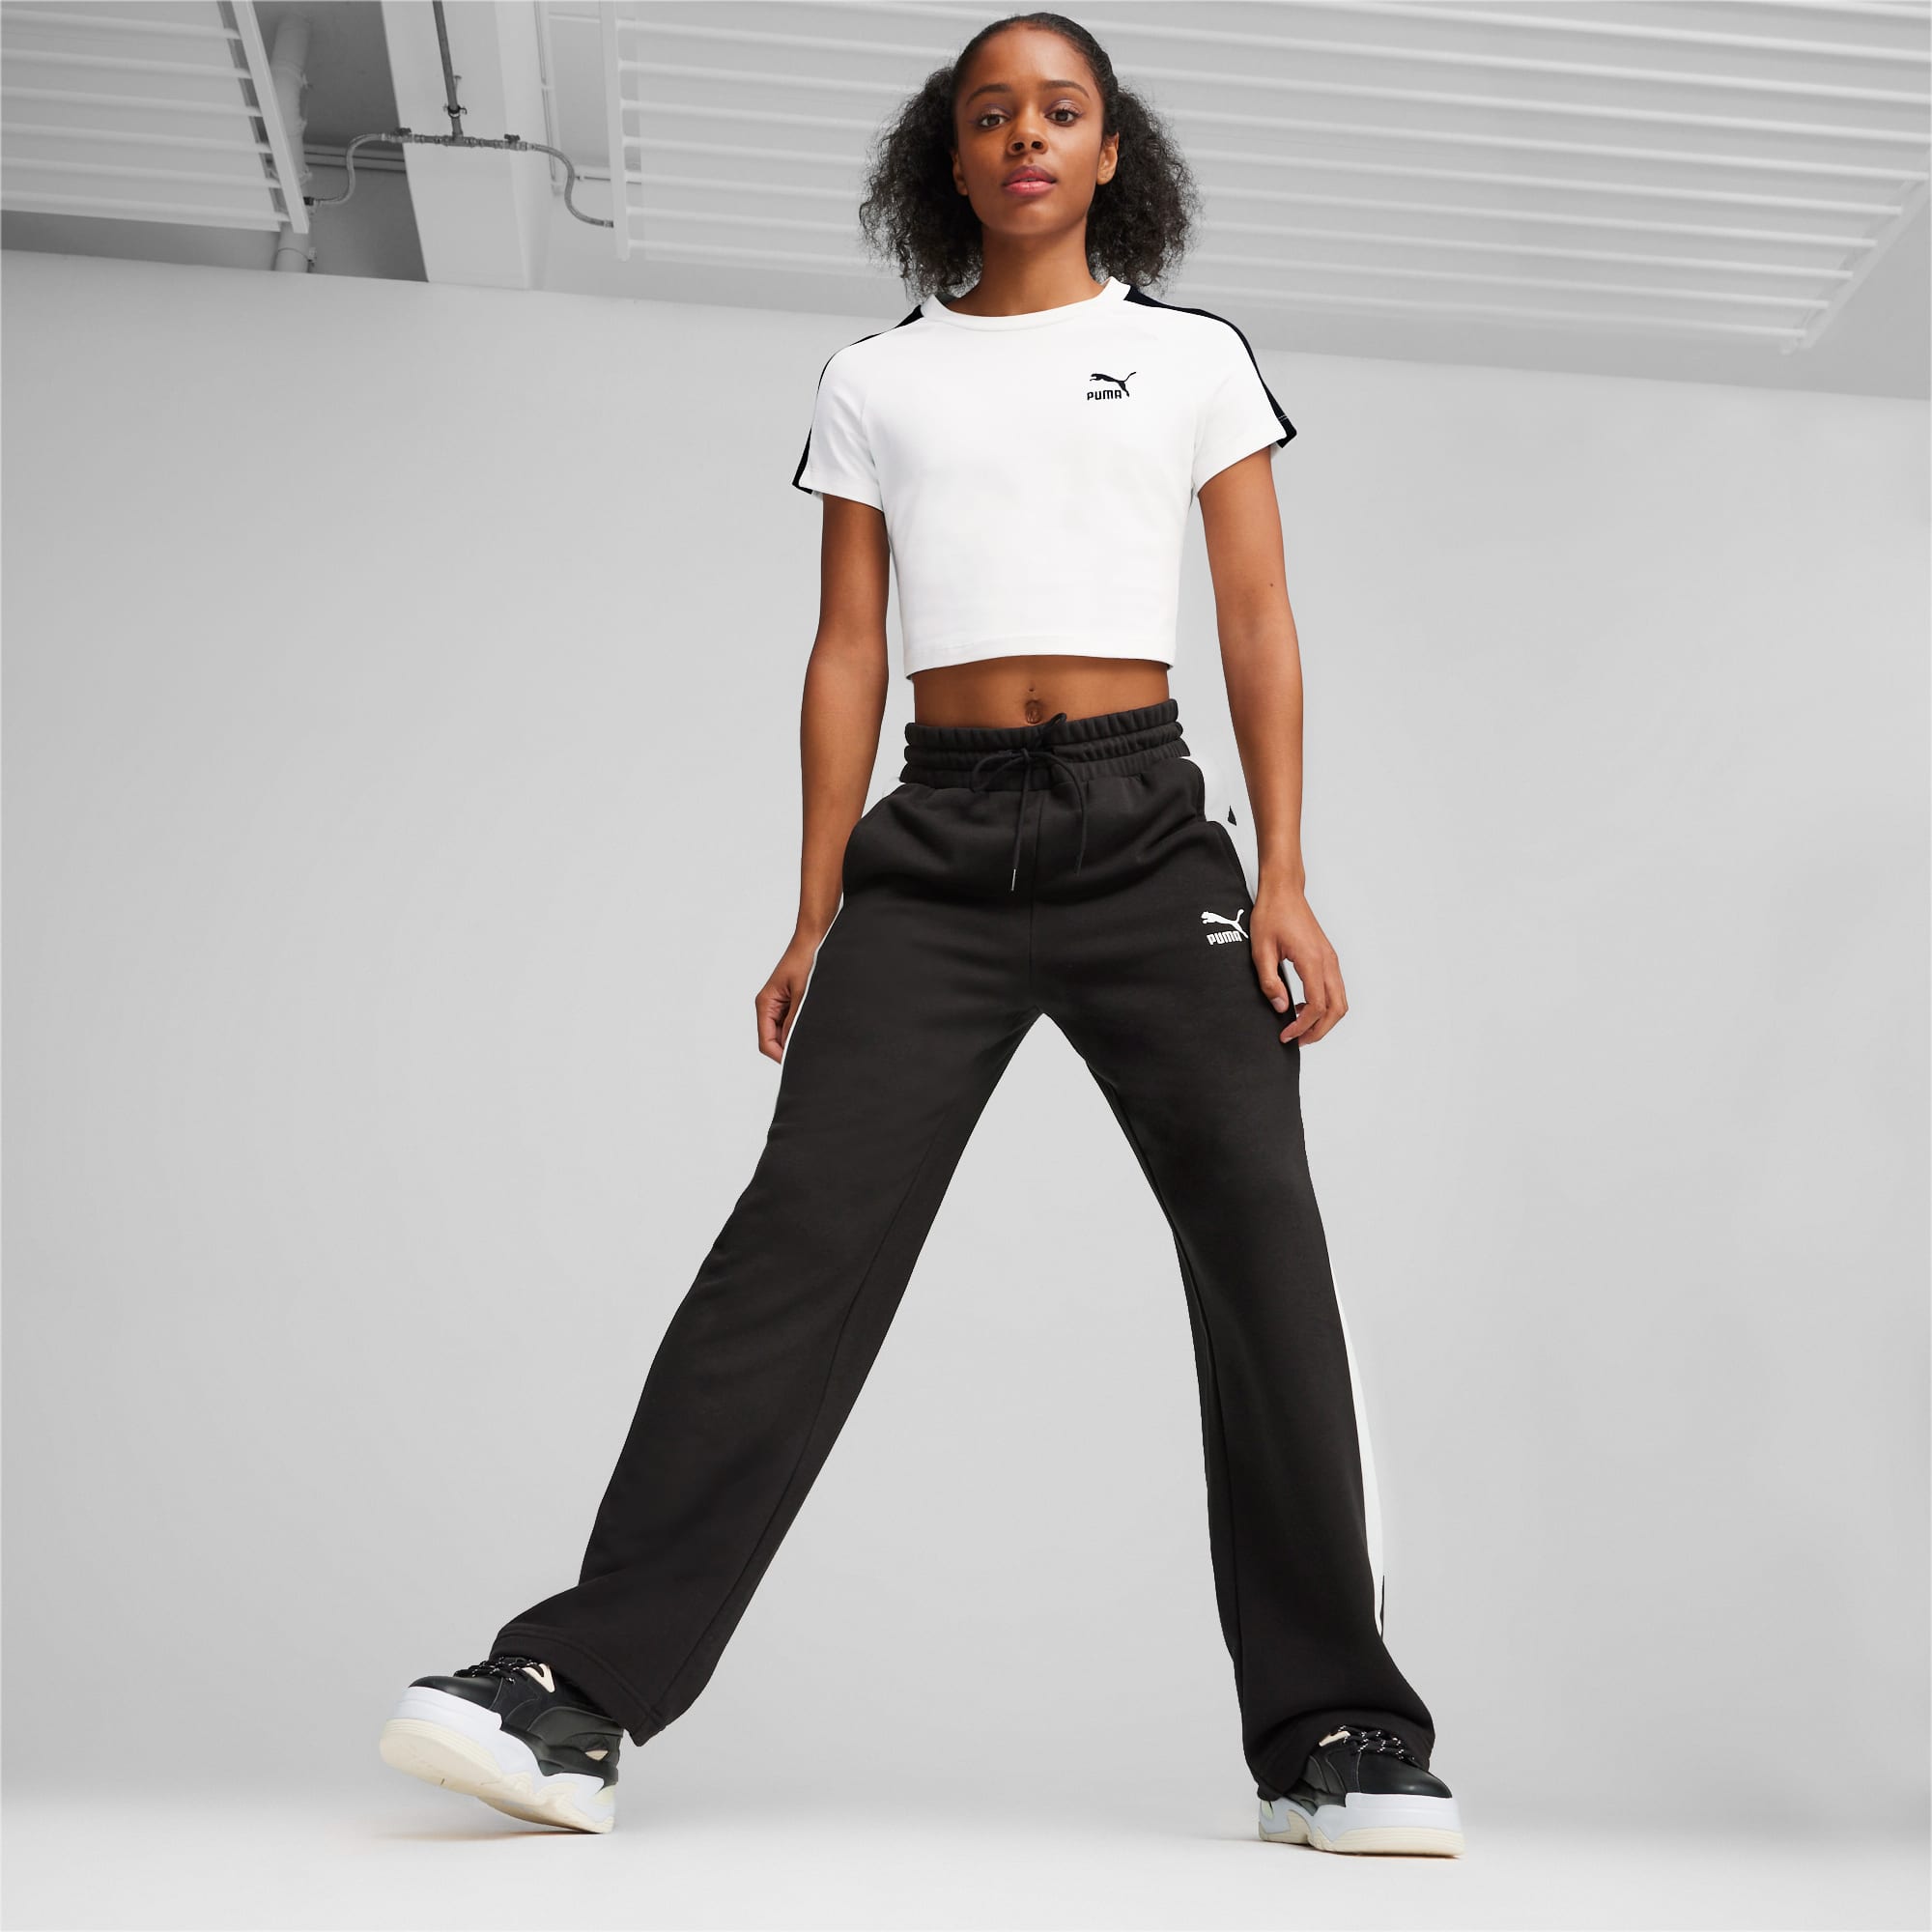 PUMA Iconic T7 Women's Baby T-Shirt, White, Size M, Clothing